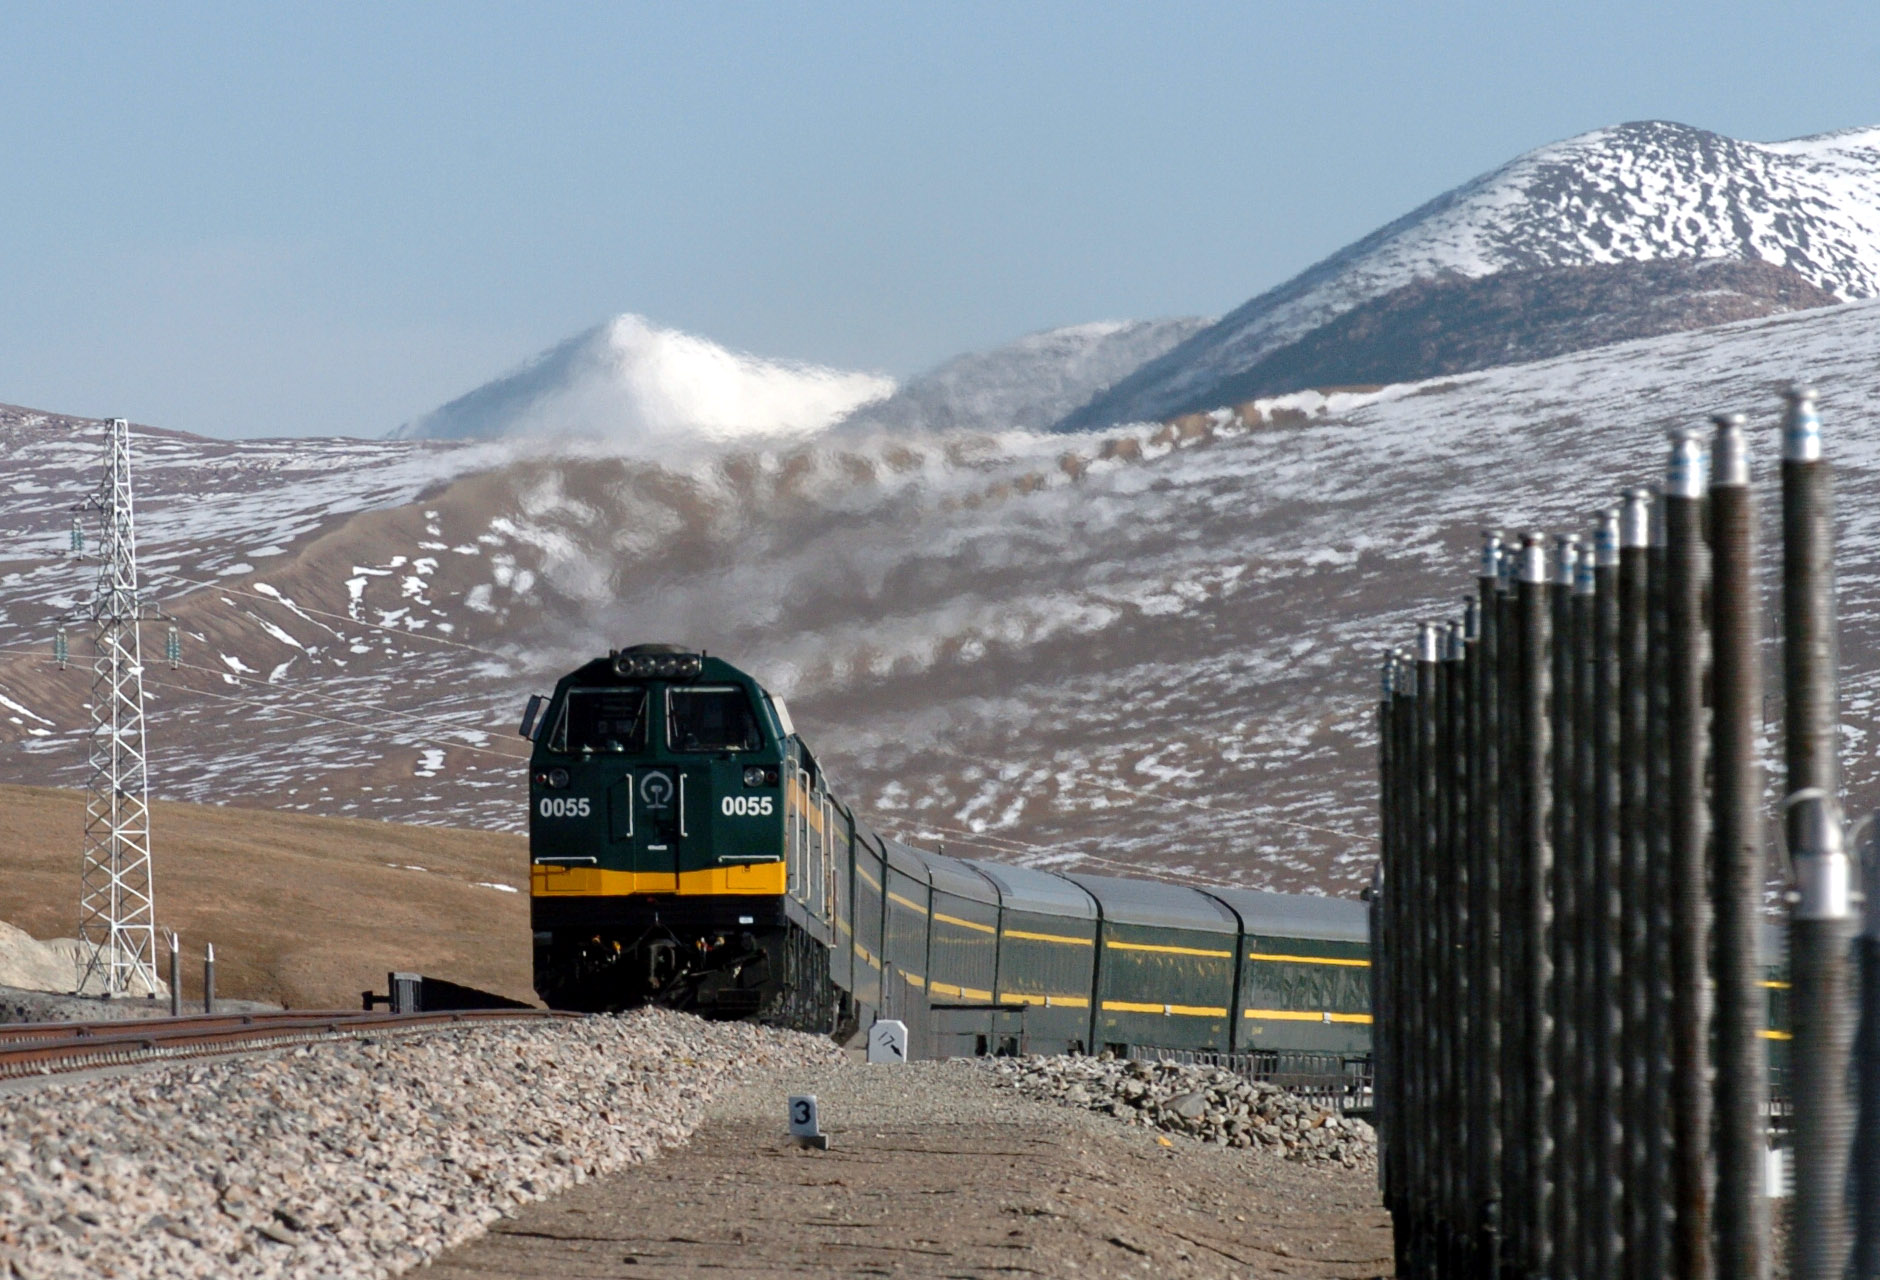 铁路时代的雪域高原--青藏铁路通车10周年-新华网 西藏